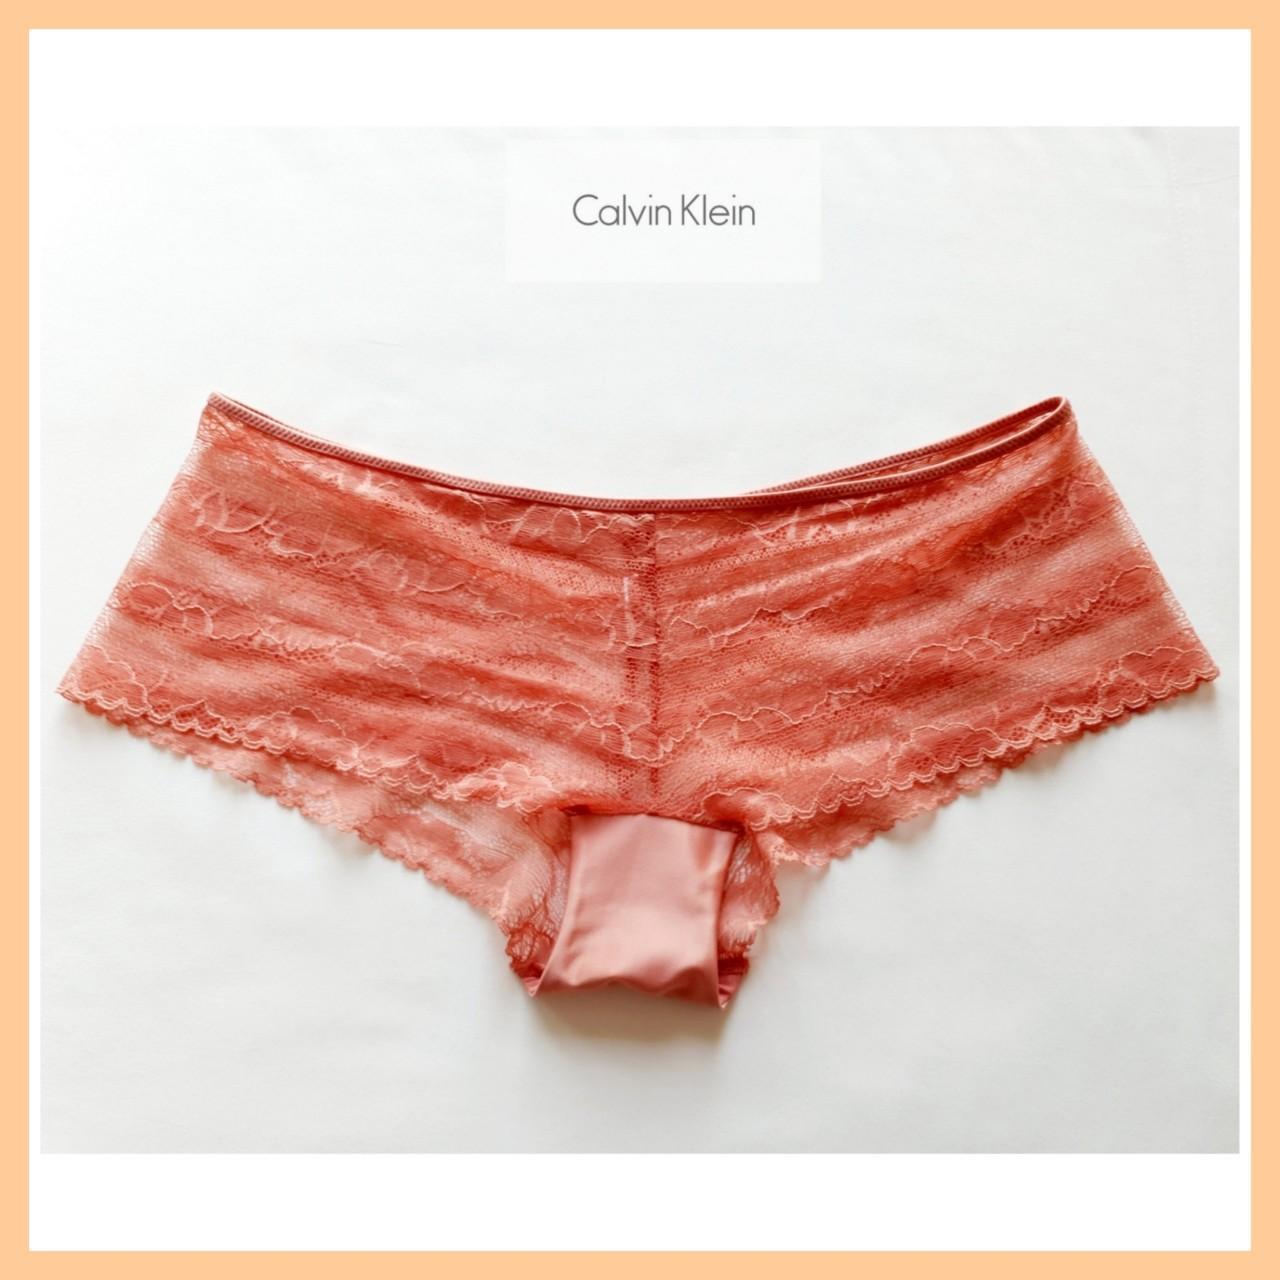 Calvin Klein Matching Panties Bras for Women